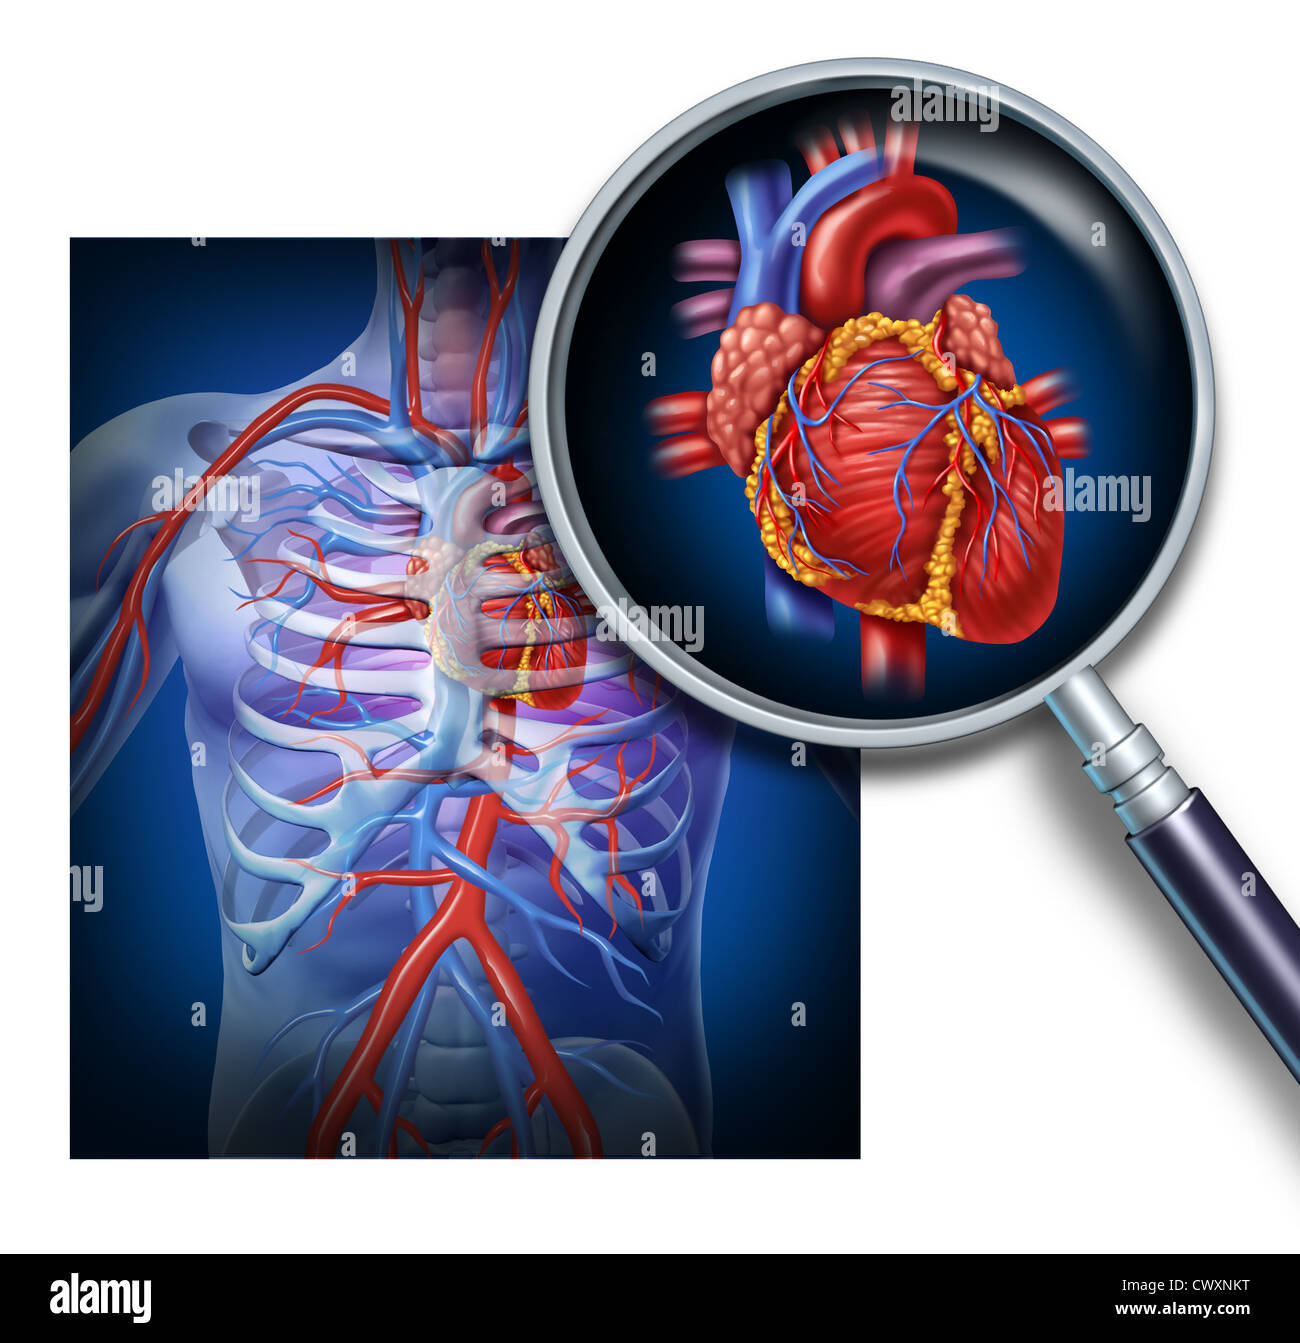 Anatomia del cuore umano come un fuoco e l'ingrandimento della circolazione e sistema cardiovascolare da un corpo sano come un medico di cura di salute del simbolo al suo interno un organo vascolare come un diagramma di medici. Foto Stock